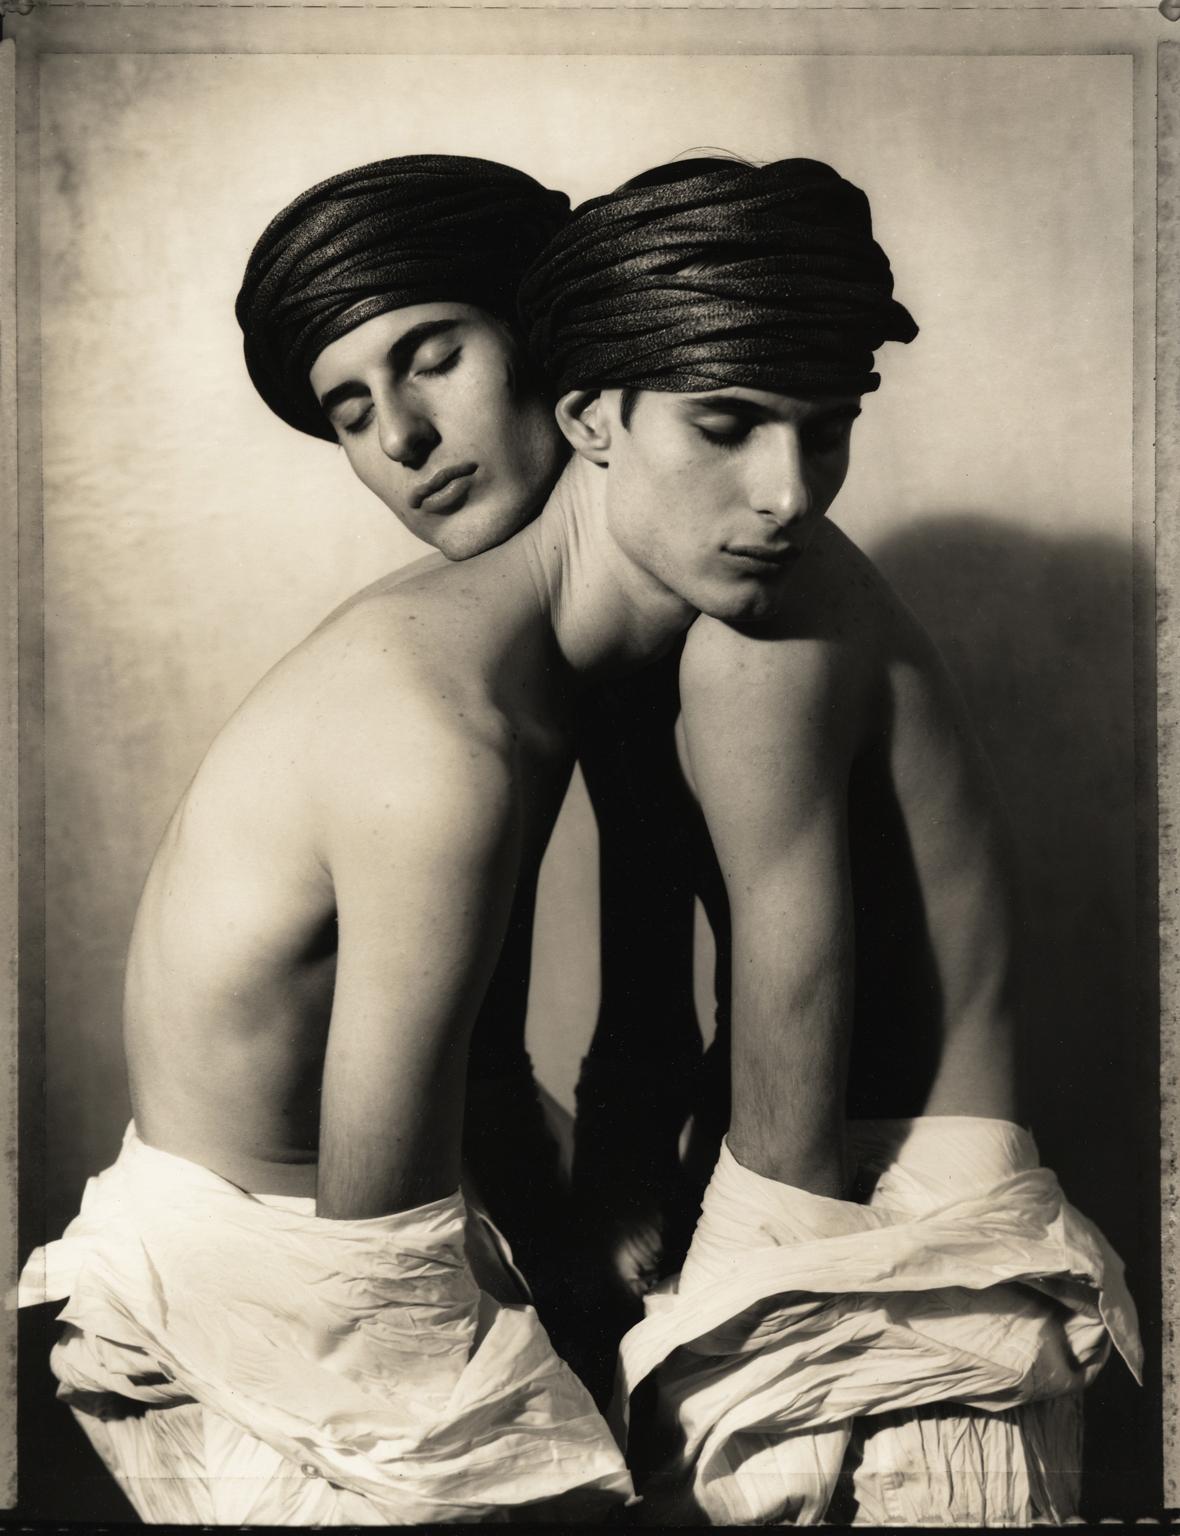 Ron Baxter Smith Black and White Photograph – Twins Entwined, 1991: Eineiige Zwillinge, die gemeinsam in einem Studio-Porträt fotografiert wurden.